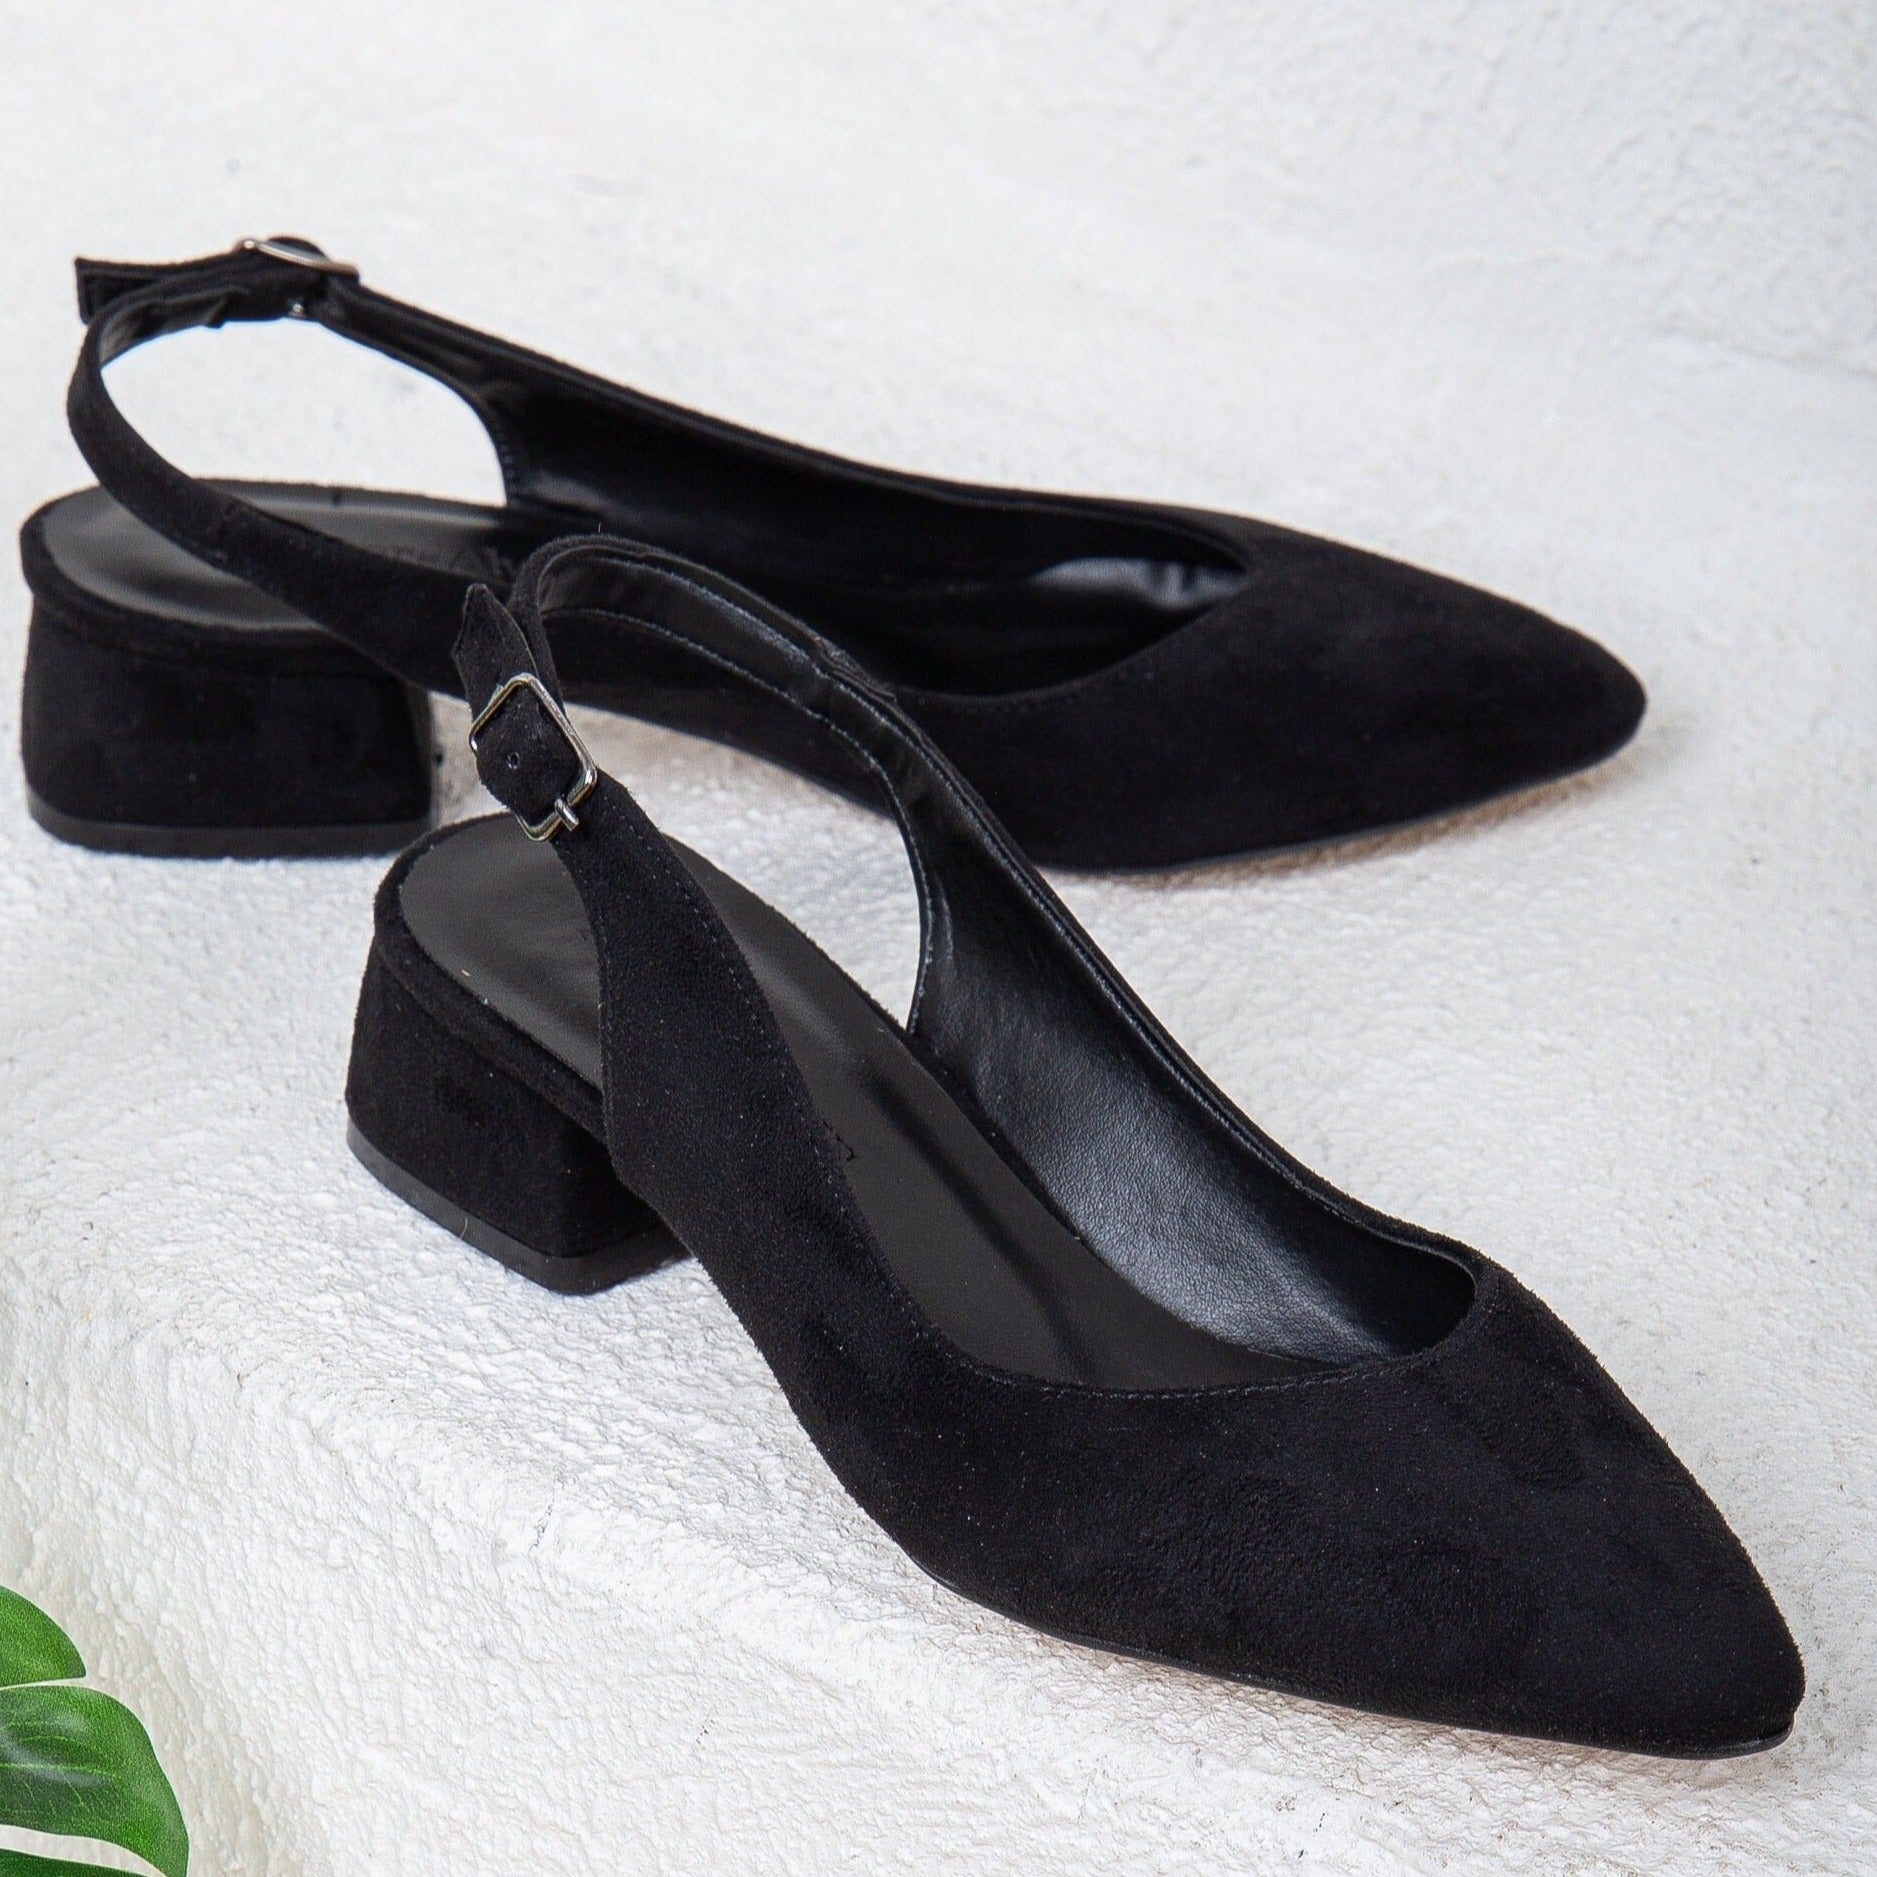 Black Suede Shoes, Black Suede Heels, Black Suede Flats, Black Low Heels, Black Slingback Shoes, Black Slingback Heels, Black Slingbacks